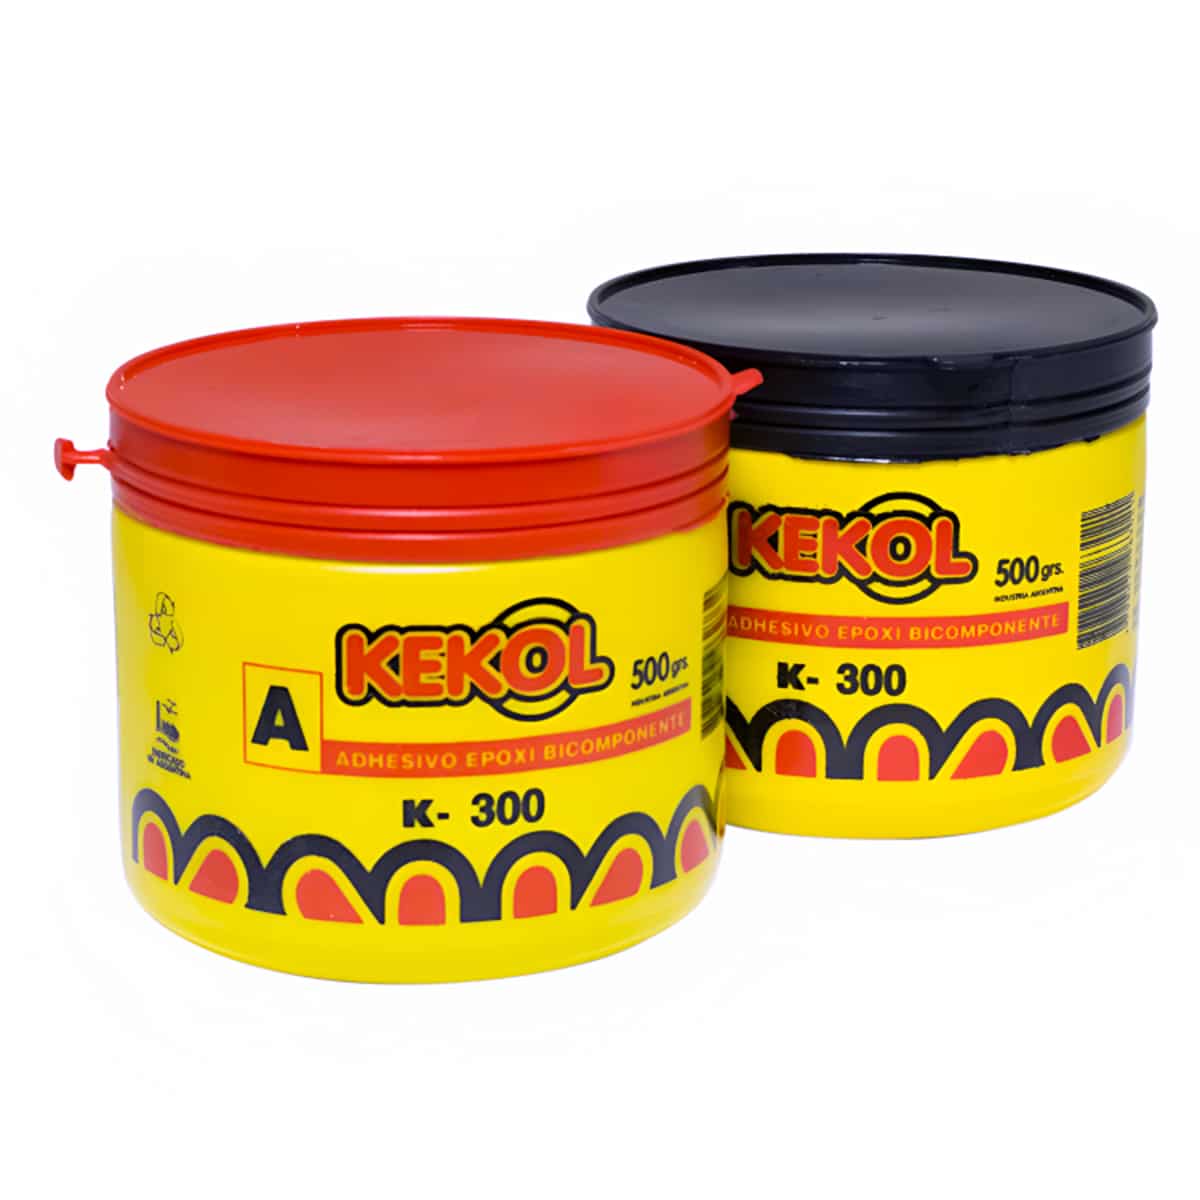 Adhesivo Epoxi Bicomponente Kekol Balde 10 kg - Guala Soluciones Decorativas